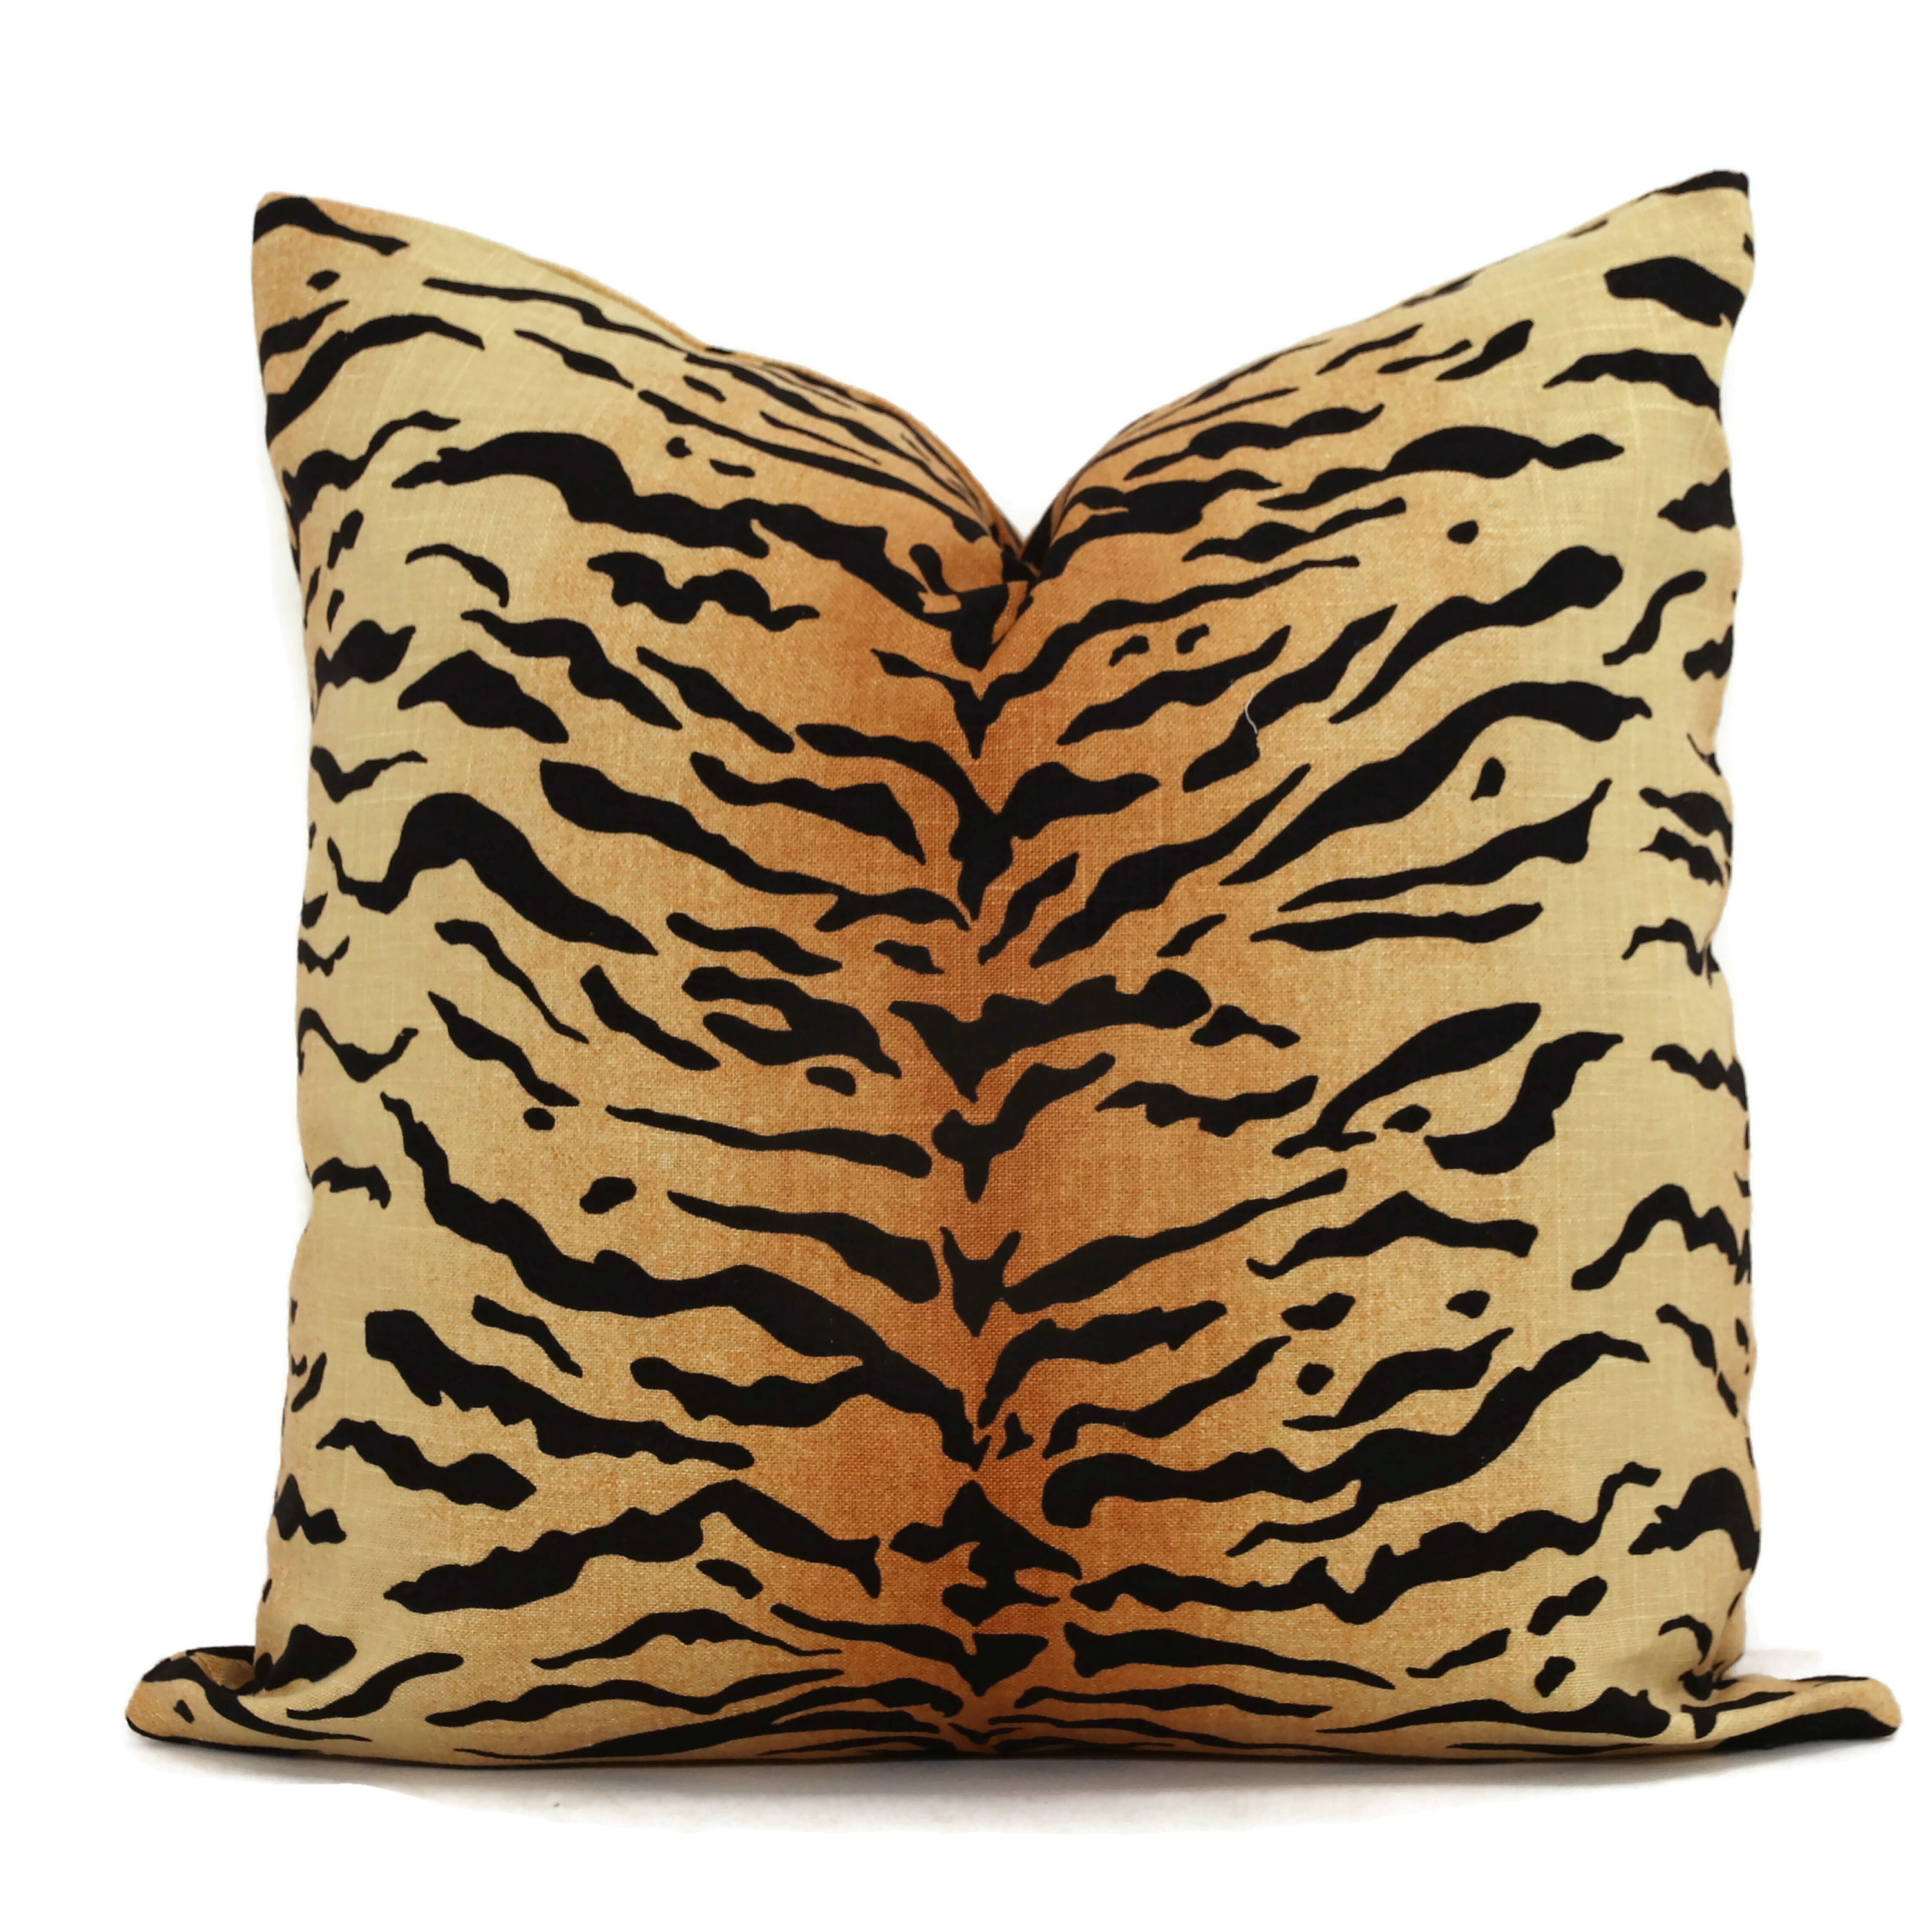 Tiger Printing tiger cotton linen pillow Case cover Sofa Waist Home Decor 